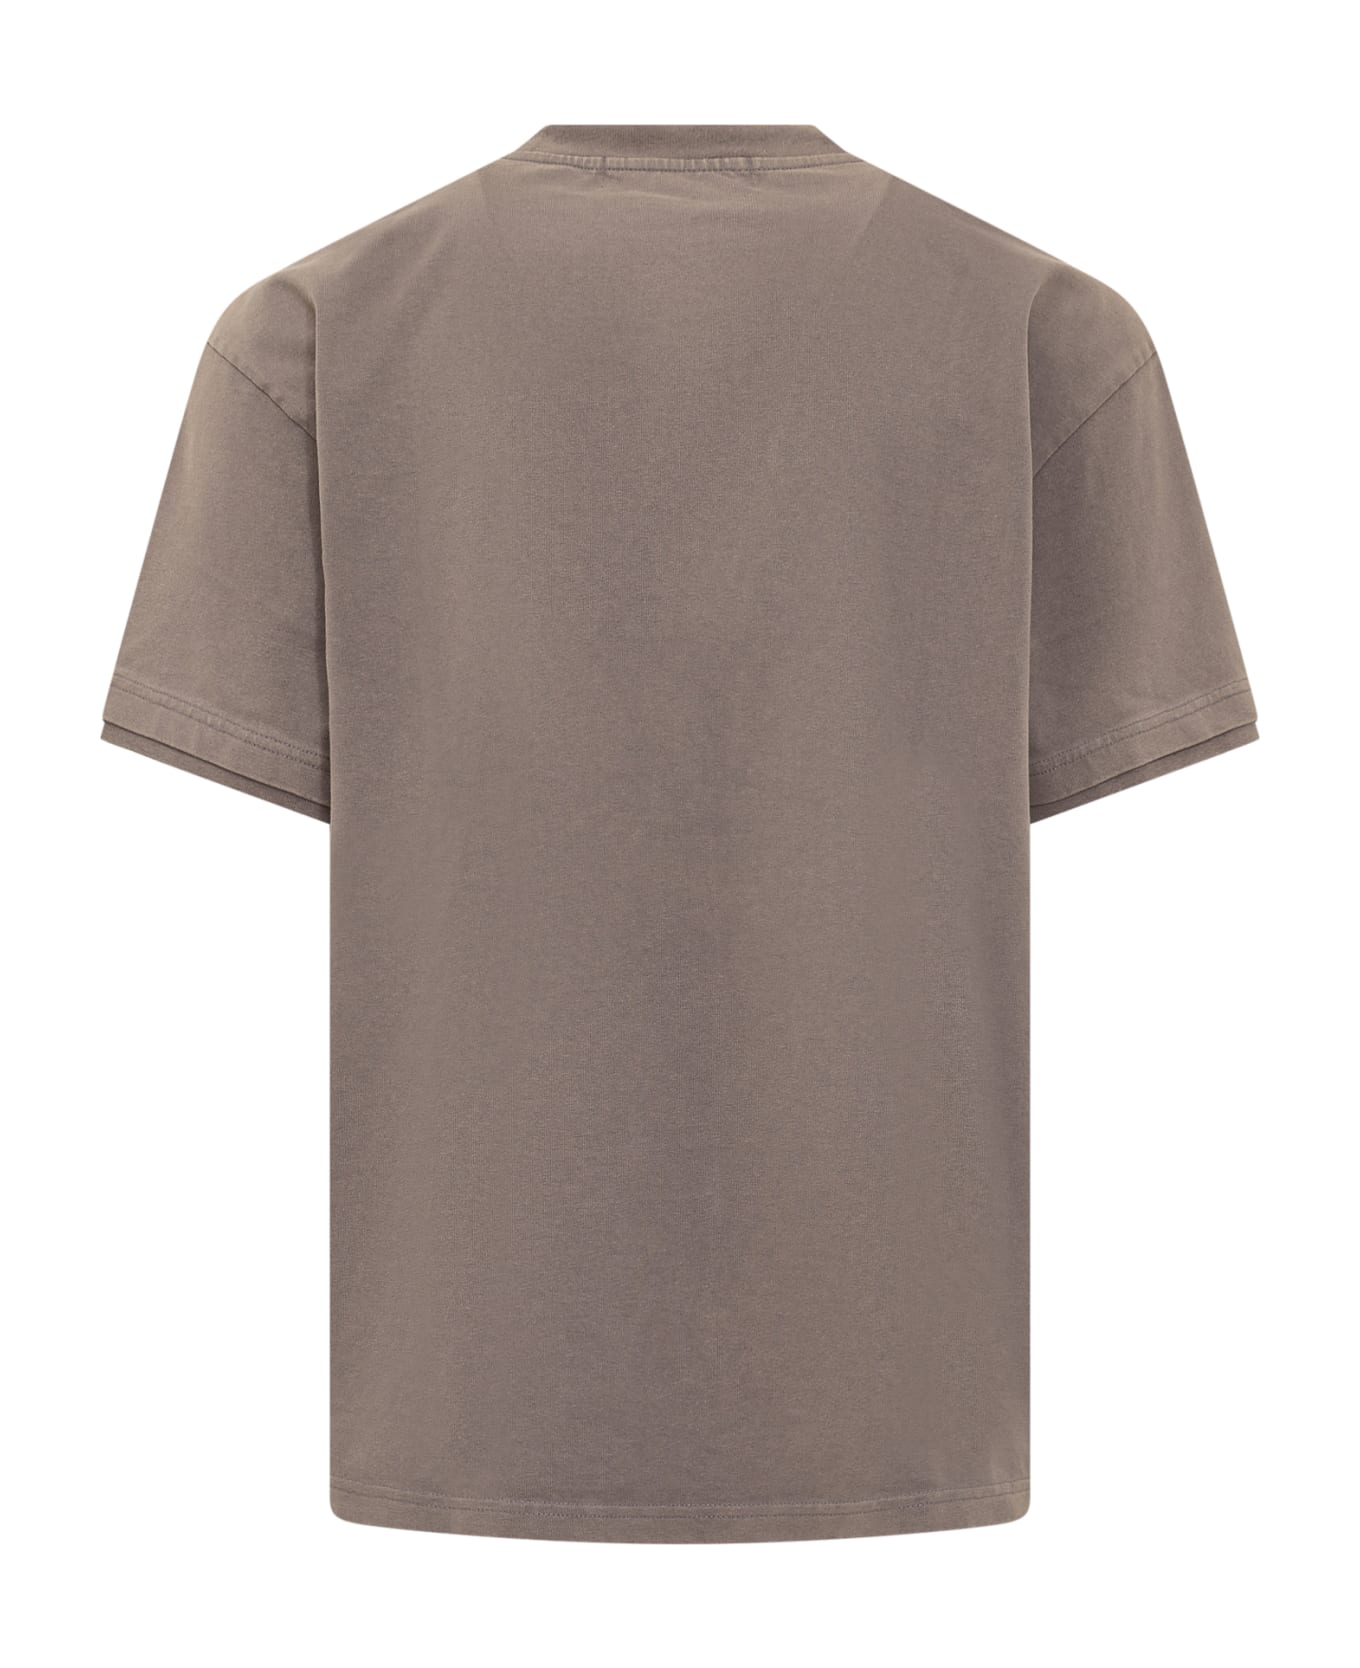 AMBUSH Crewneck T-shirt - PAVEMENT S シャツ